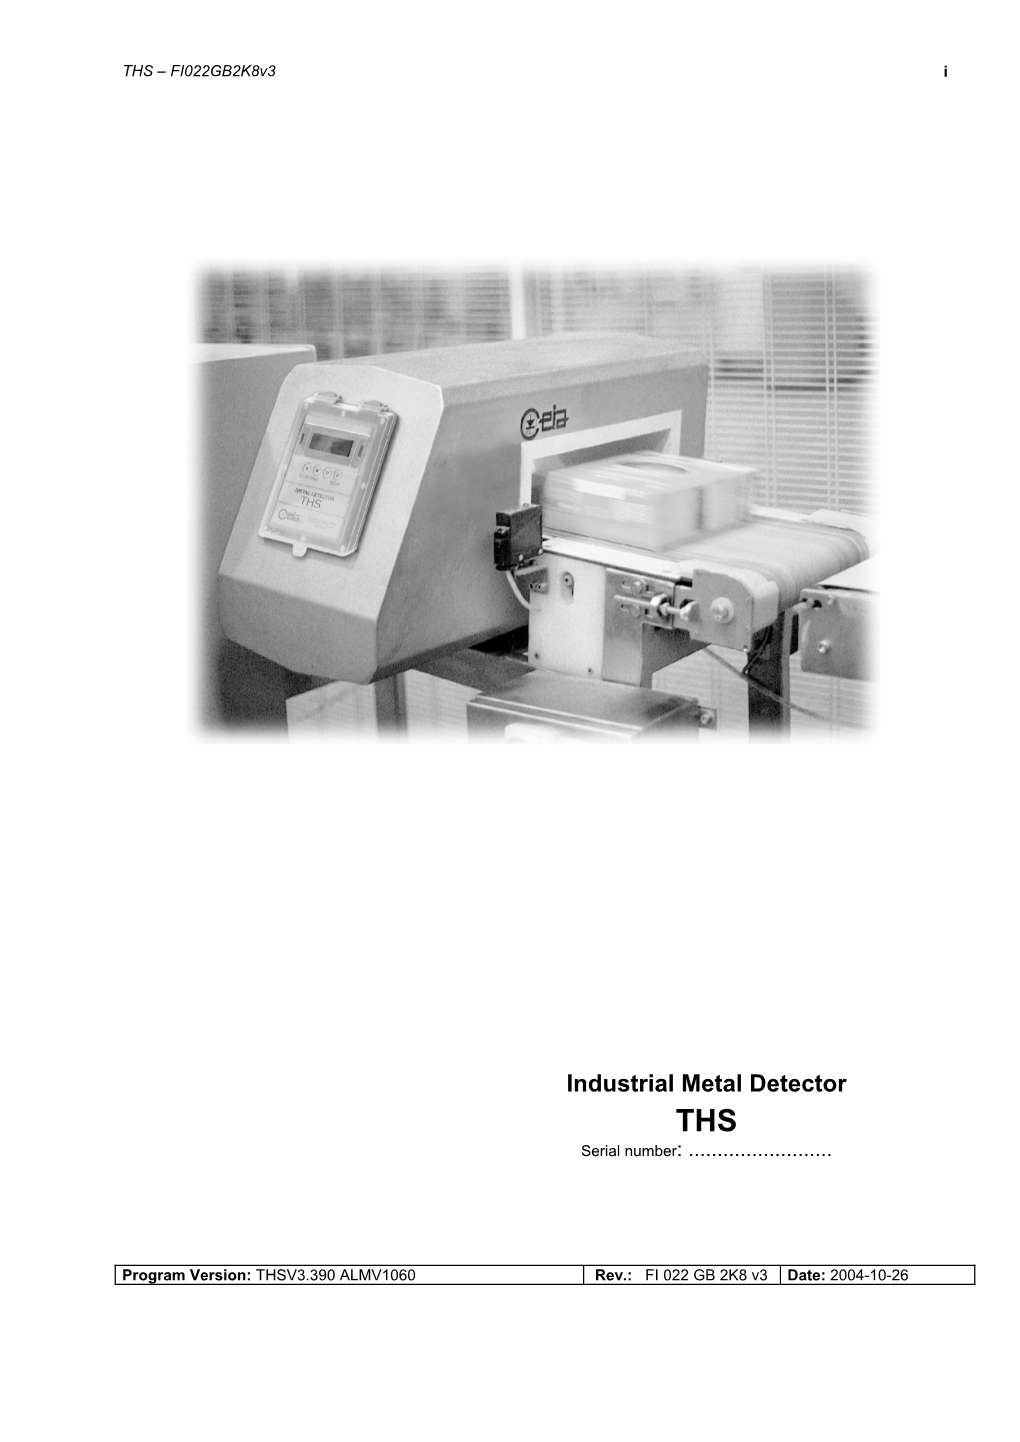 Industrial Metal Detector THS Serial Number: